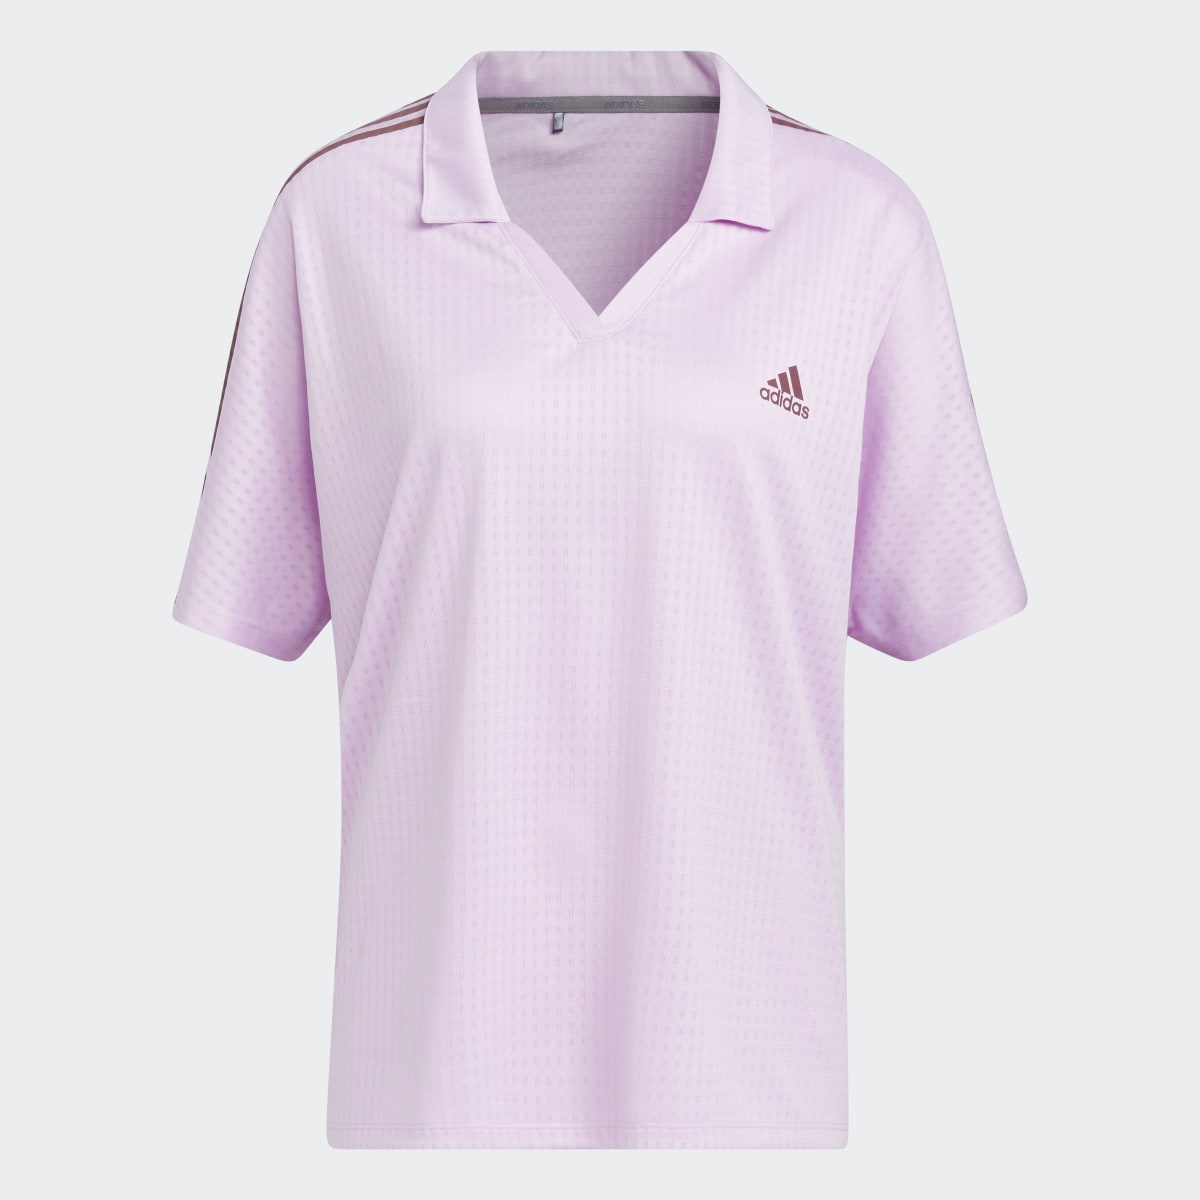 Adidas 3-Stripes Polo Shirt (Plus Size). 5